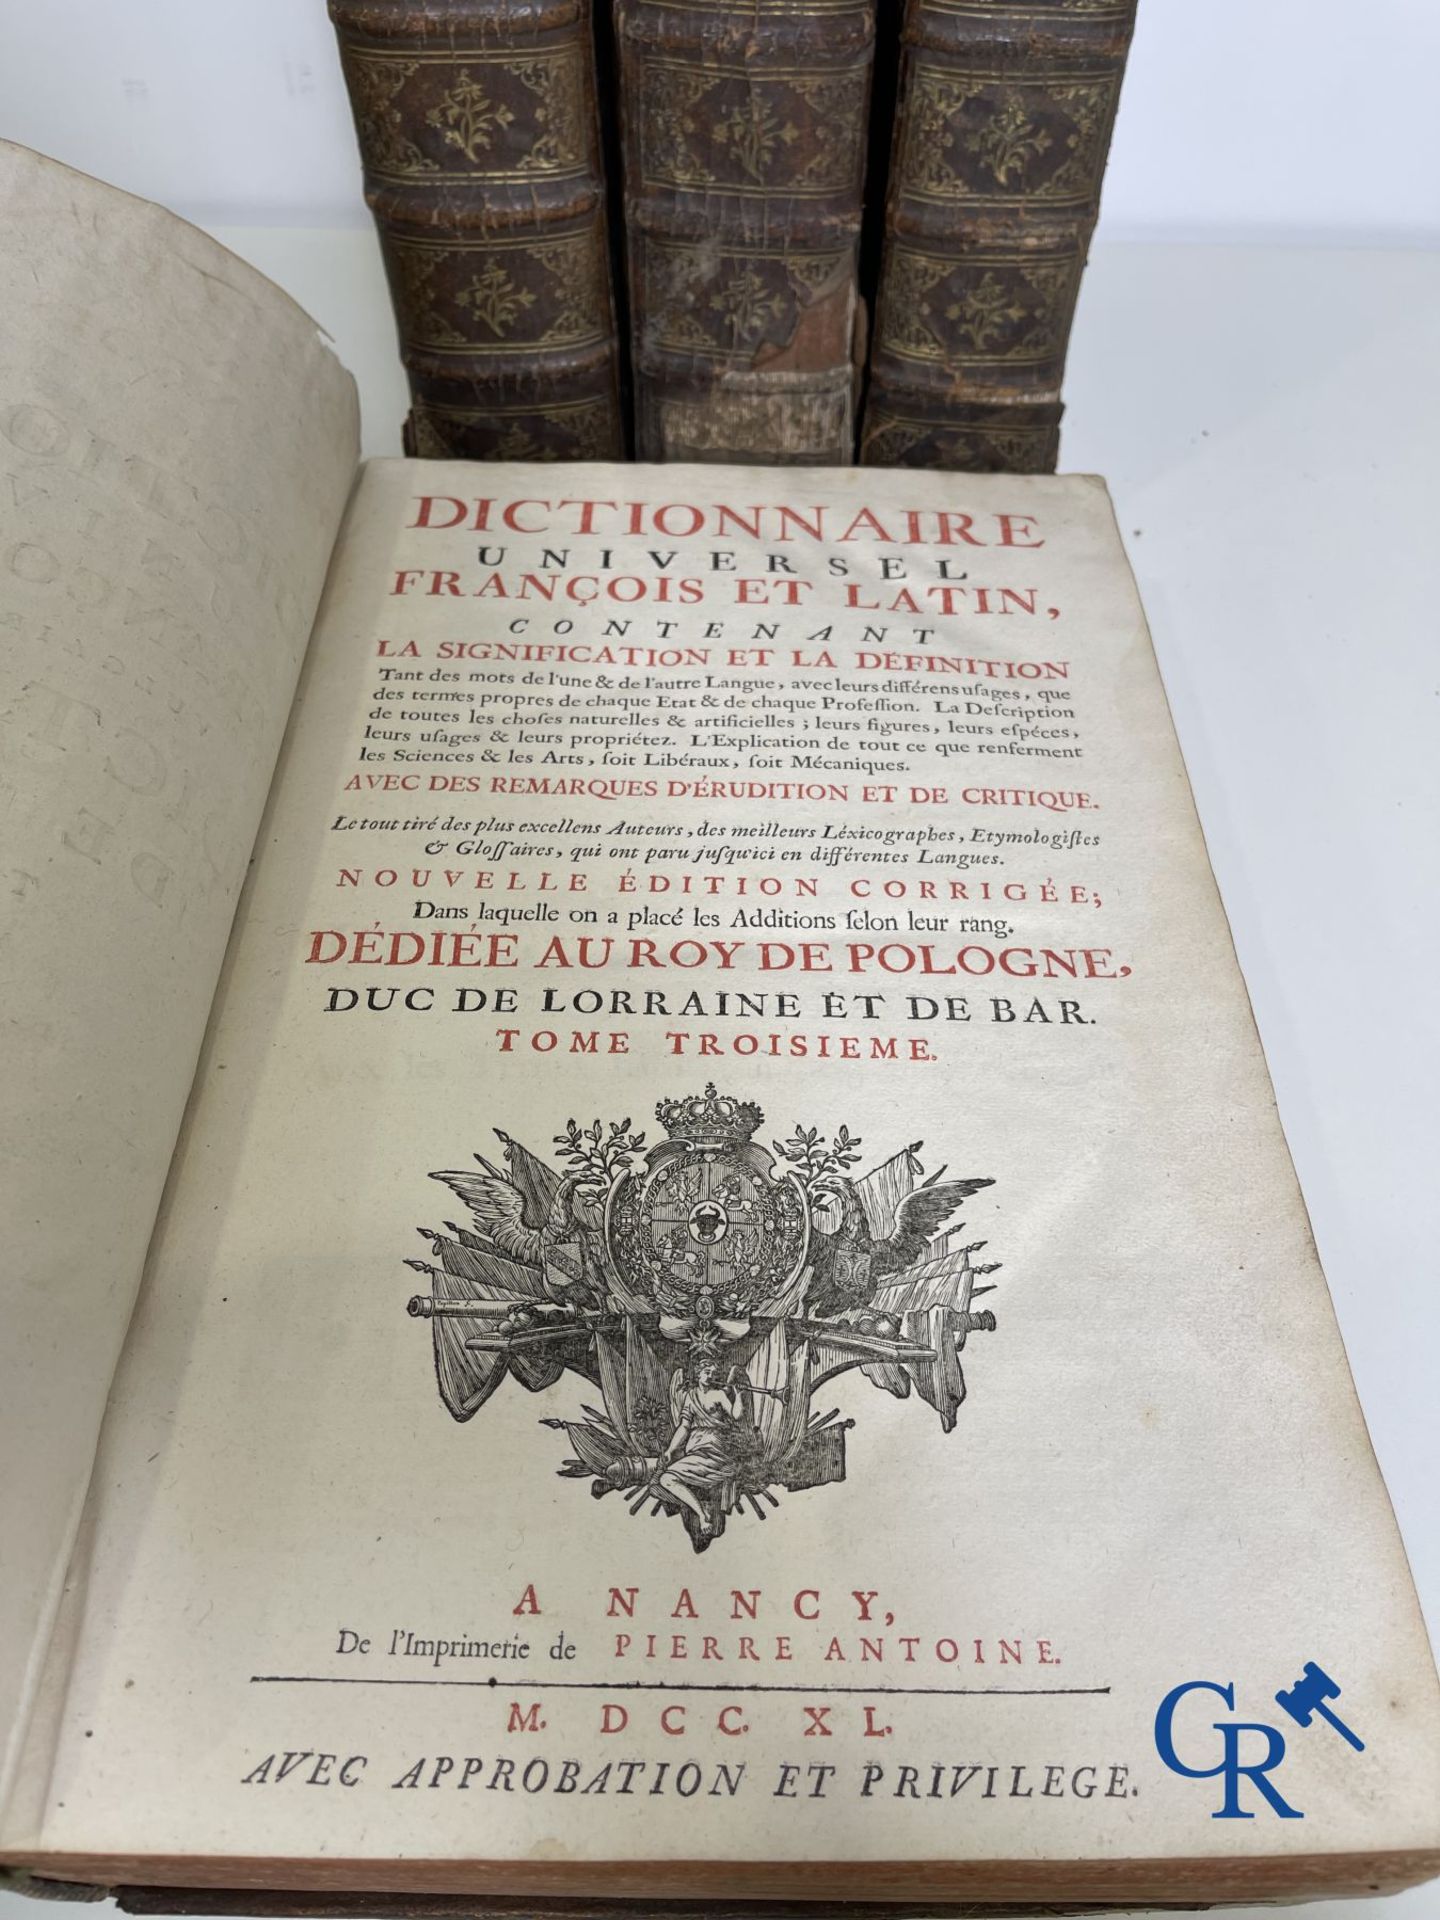 Early printed books: Dictionnaire de Trévoux, Pierre Antoine 1740. - Image 9 of 18